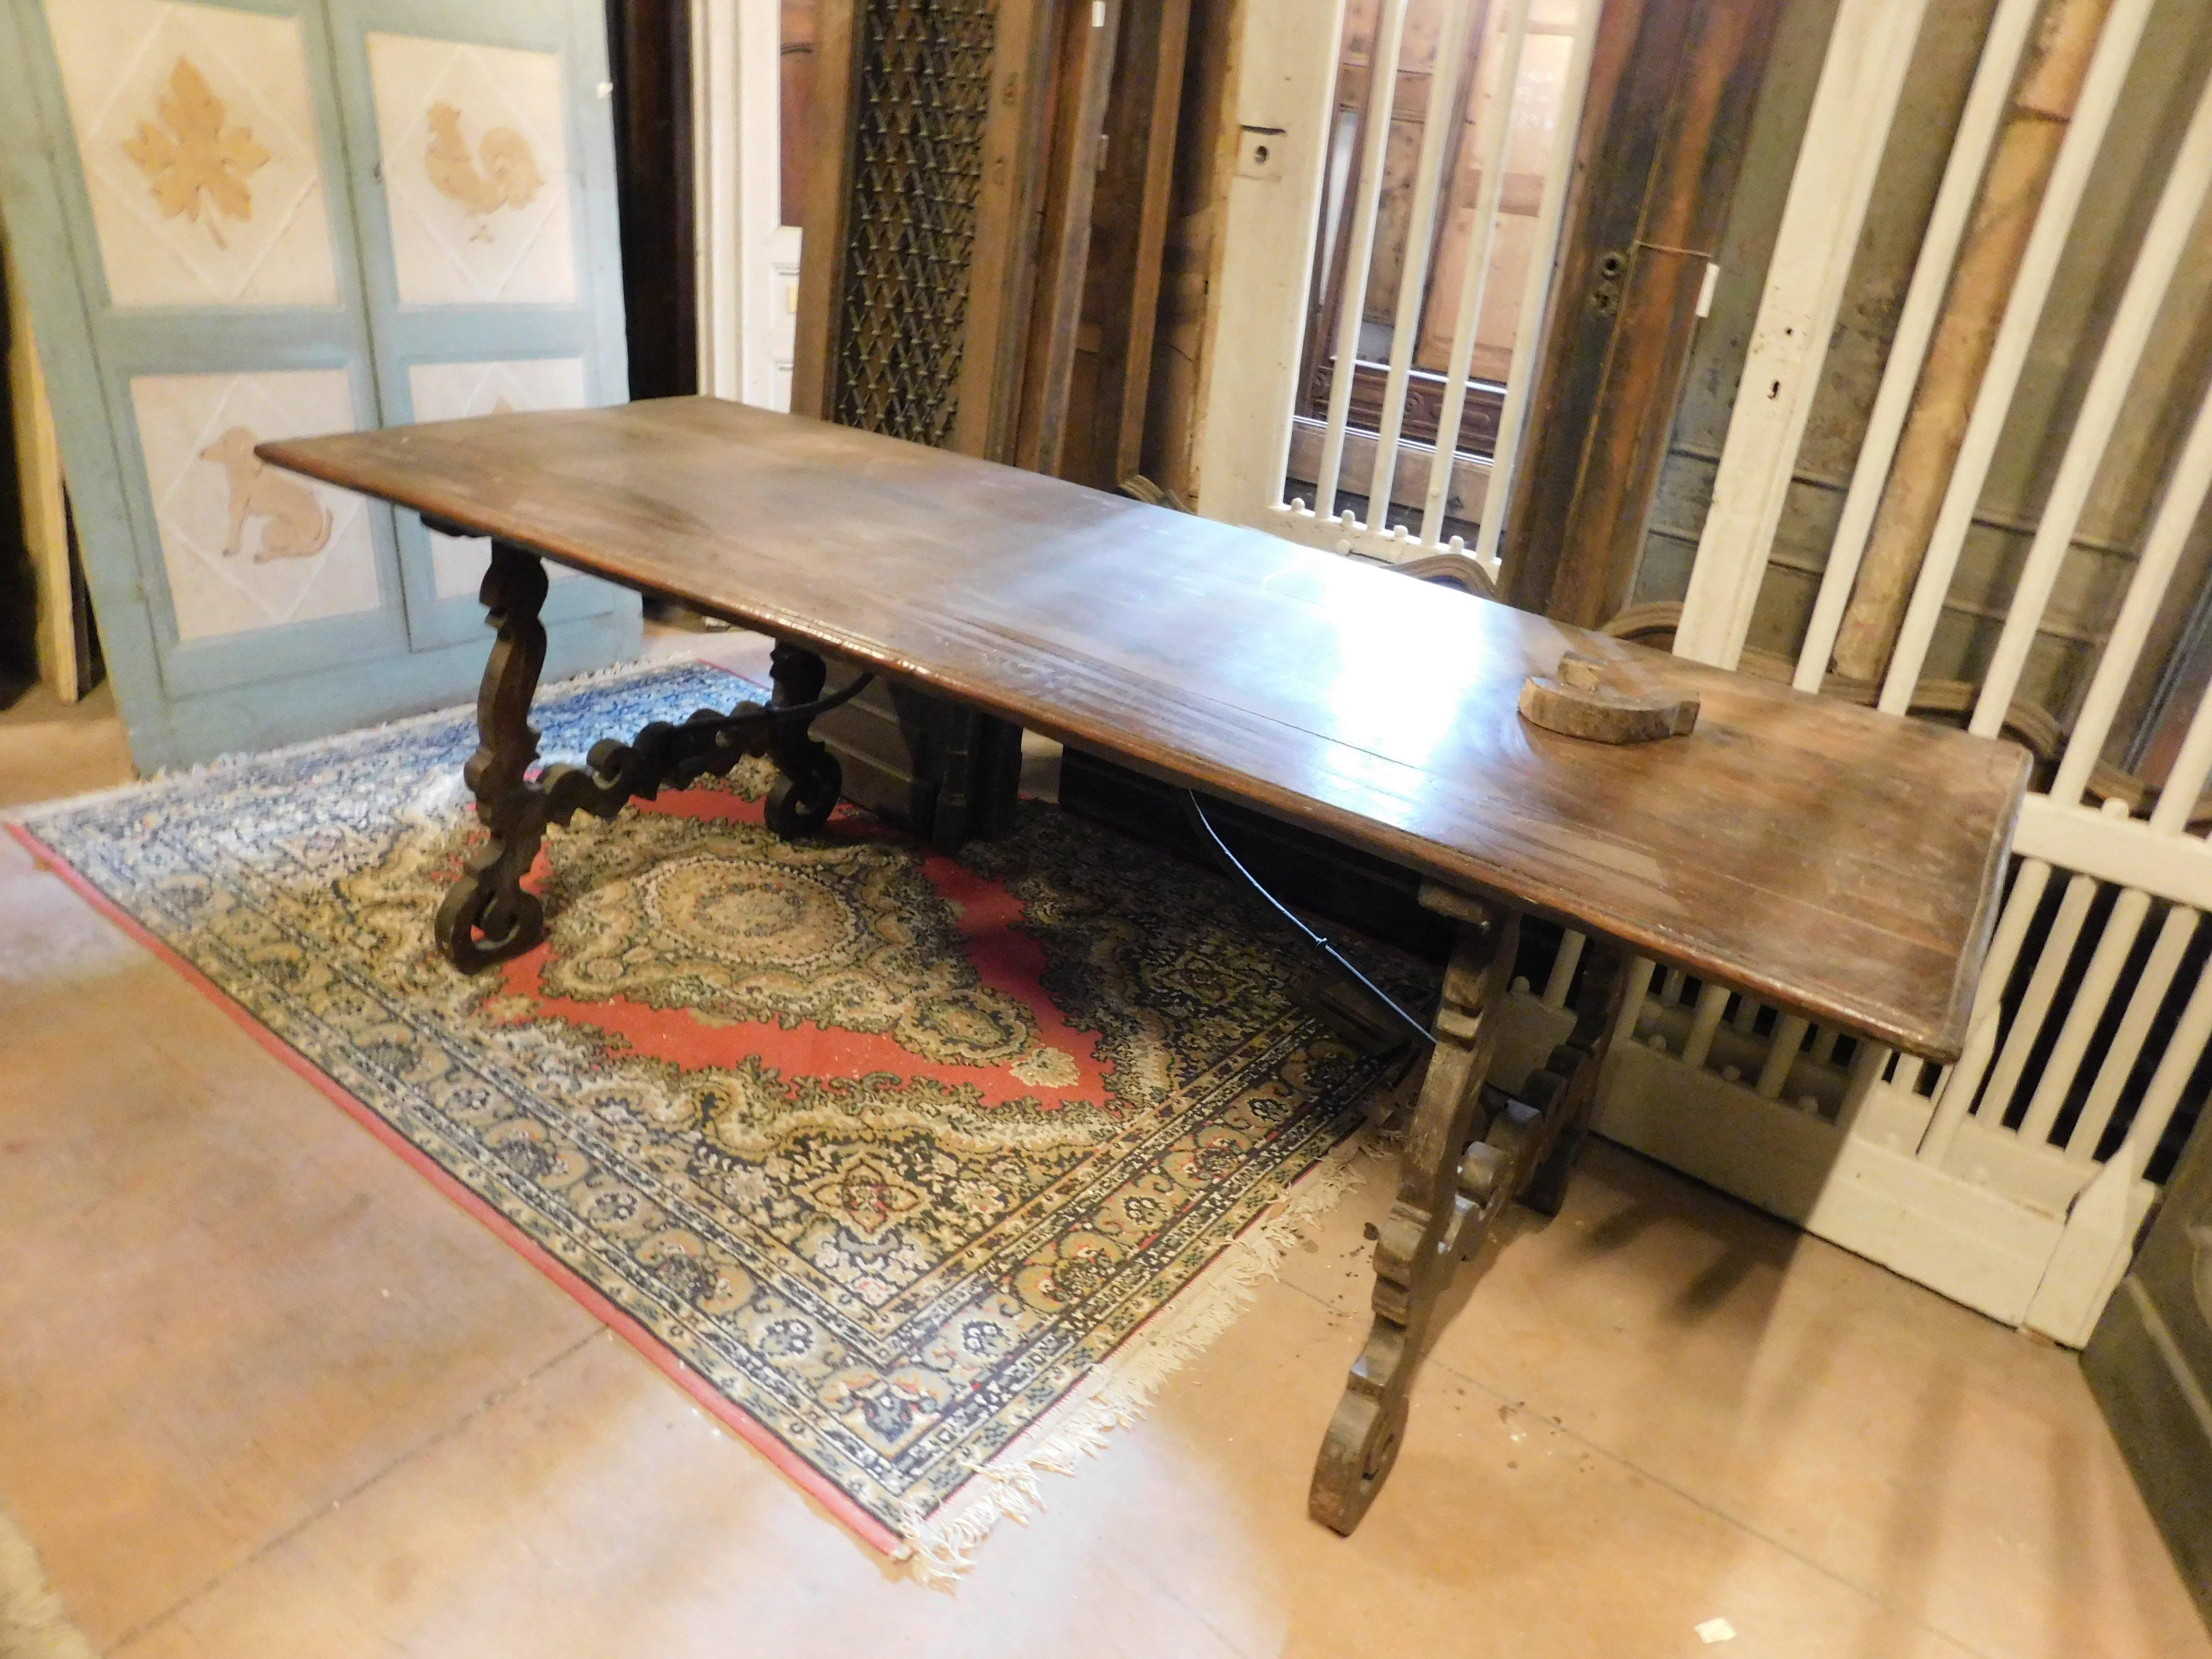 Antiker Fratino-Tisch aus massivem Nussbaumholz, sehr reichhaltig mit gewellten Beinen und eisernem Tischfuß, gebaut in den frühen 1800er Jahren in Italien, im Stil der spanischen.
Schön als Esstisch oder als Beistelltisch, vielleicht als Kontrast